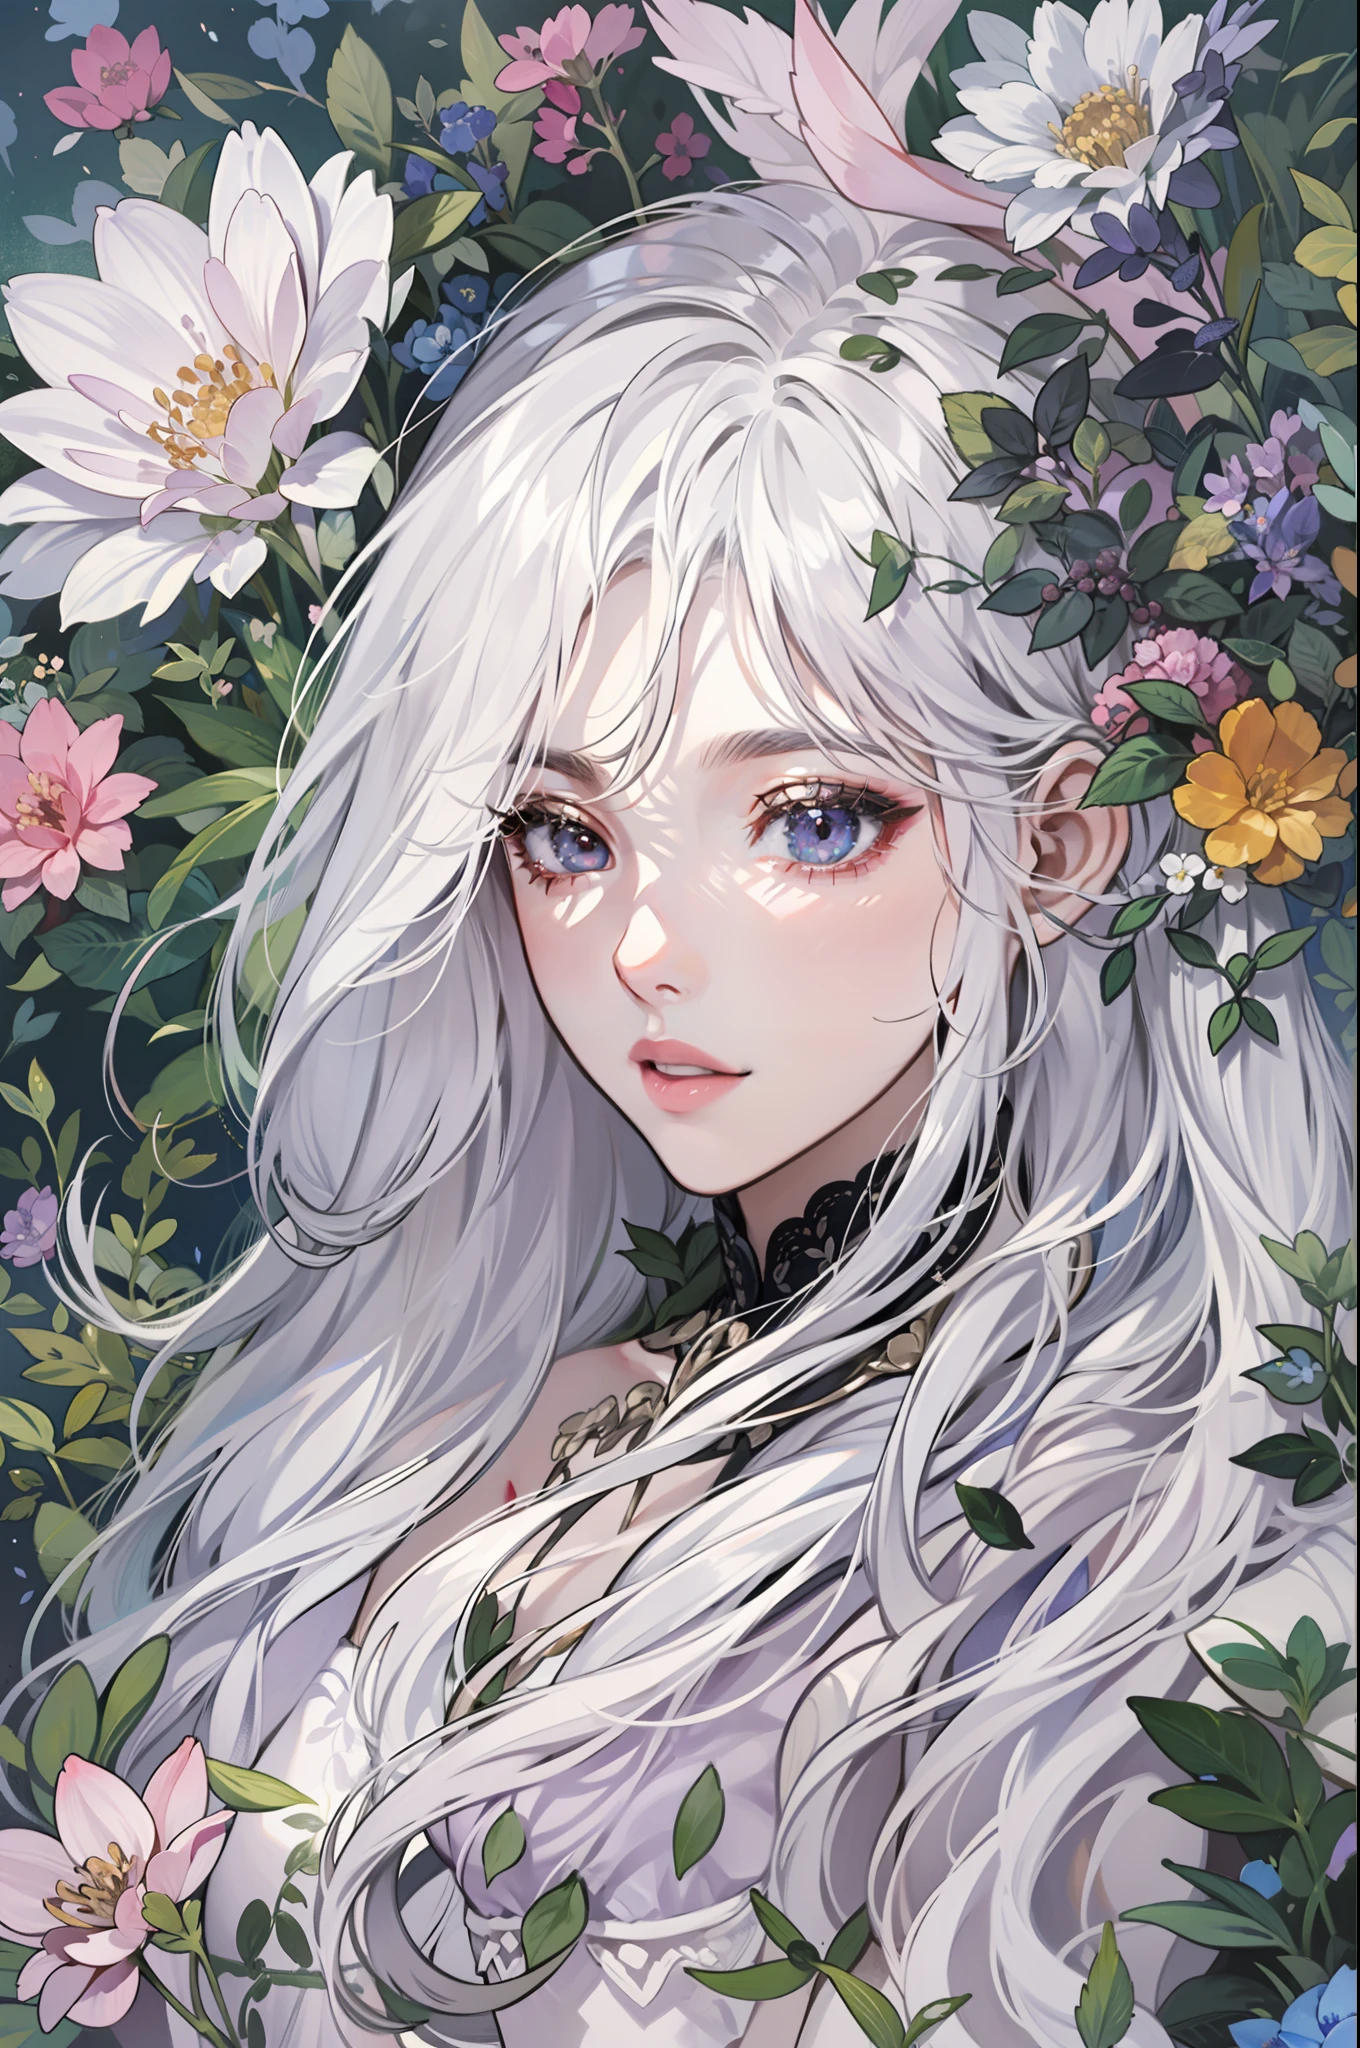 긴 은백색 머리를 가진 여자가 잔디 위에 누워 있다，은백색 머리카락，긴머리가 흩날려，보라색 눈，((검정 드레스))，잔디밭에는 다양한 꽃들이 가득하다，화려한，빛，조직，자연적인 원인，정교하고 아름다운 디테일，(눈 디테일），매우 상세한 그림